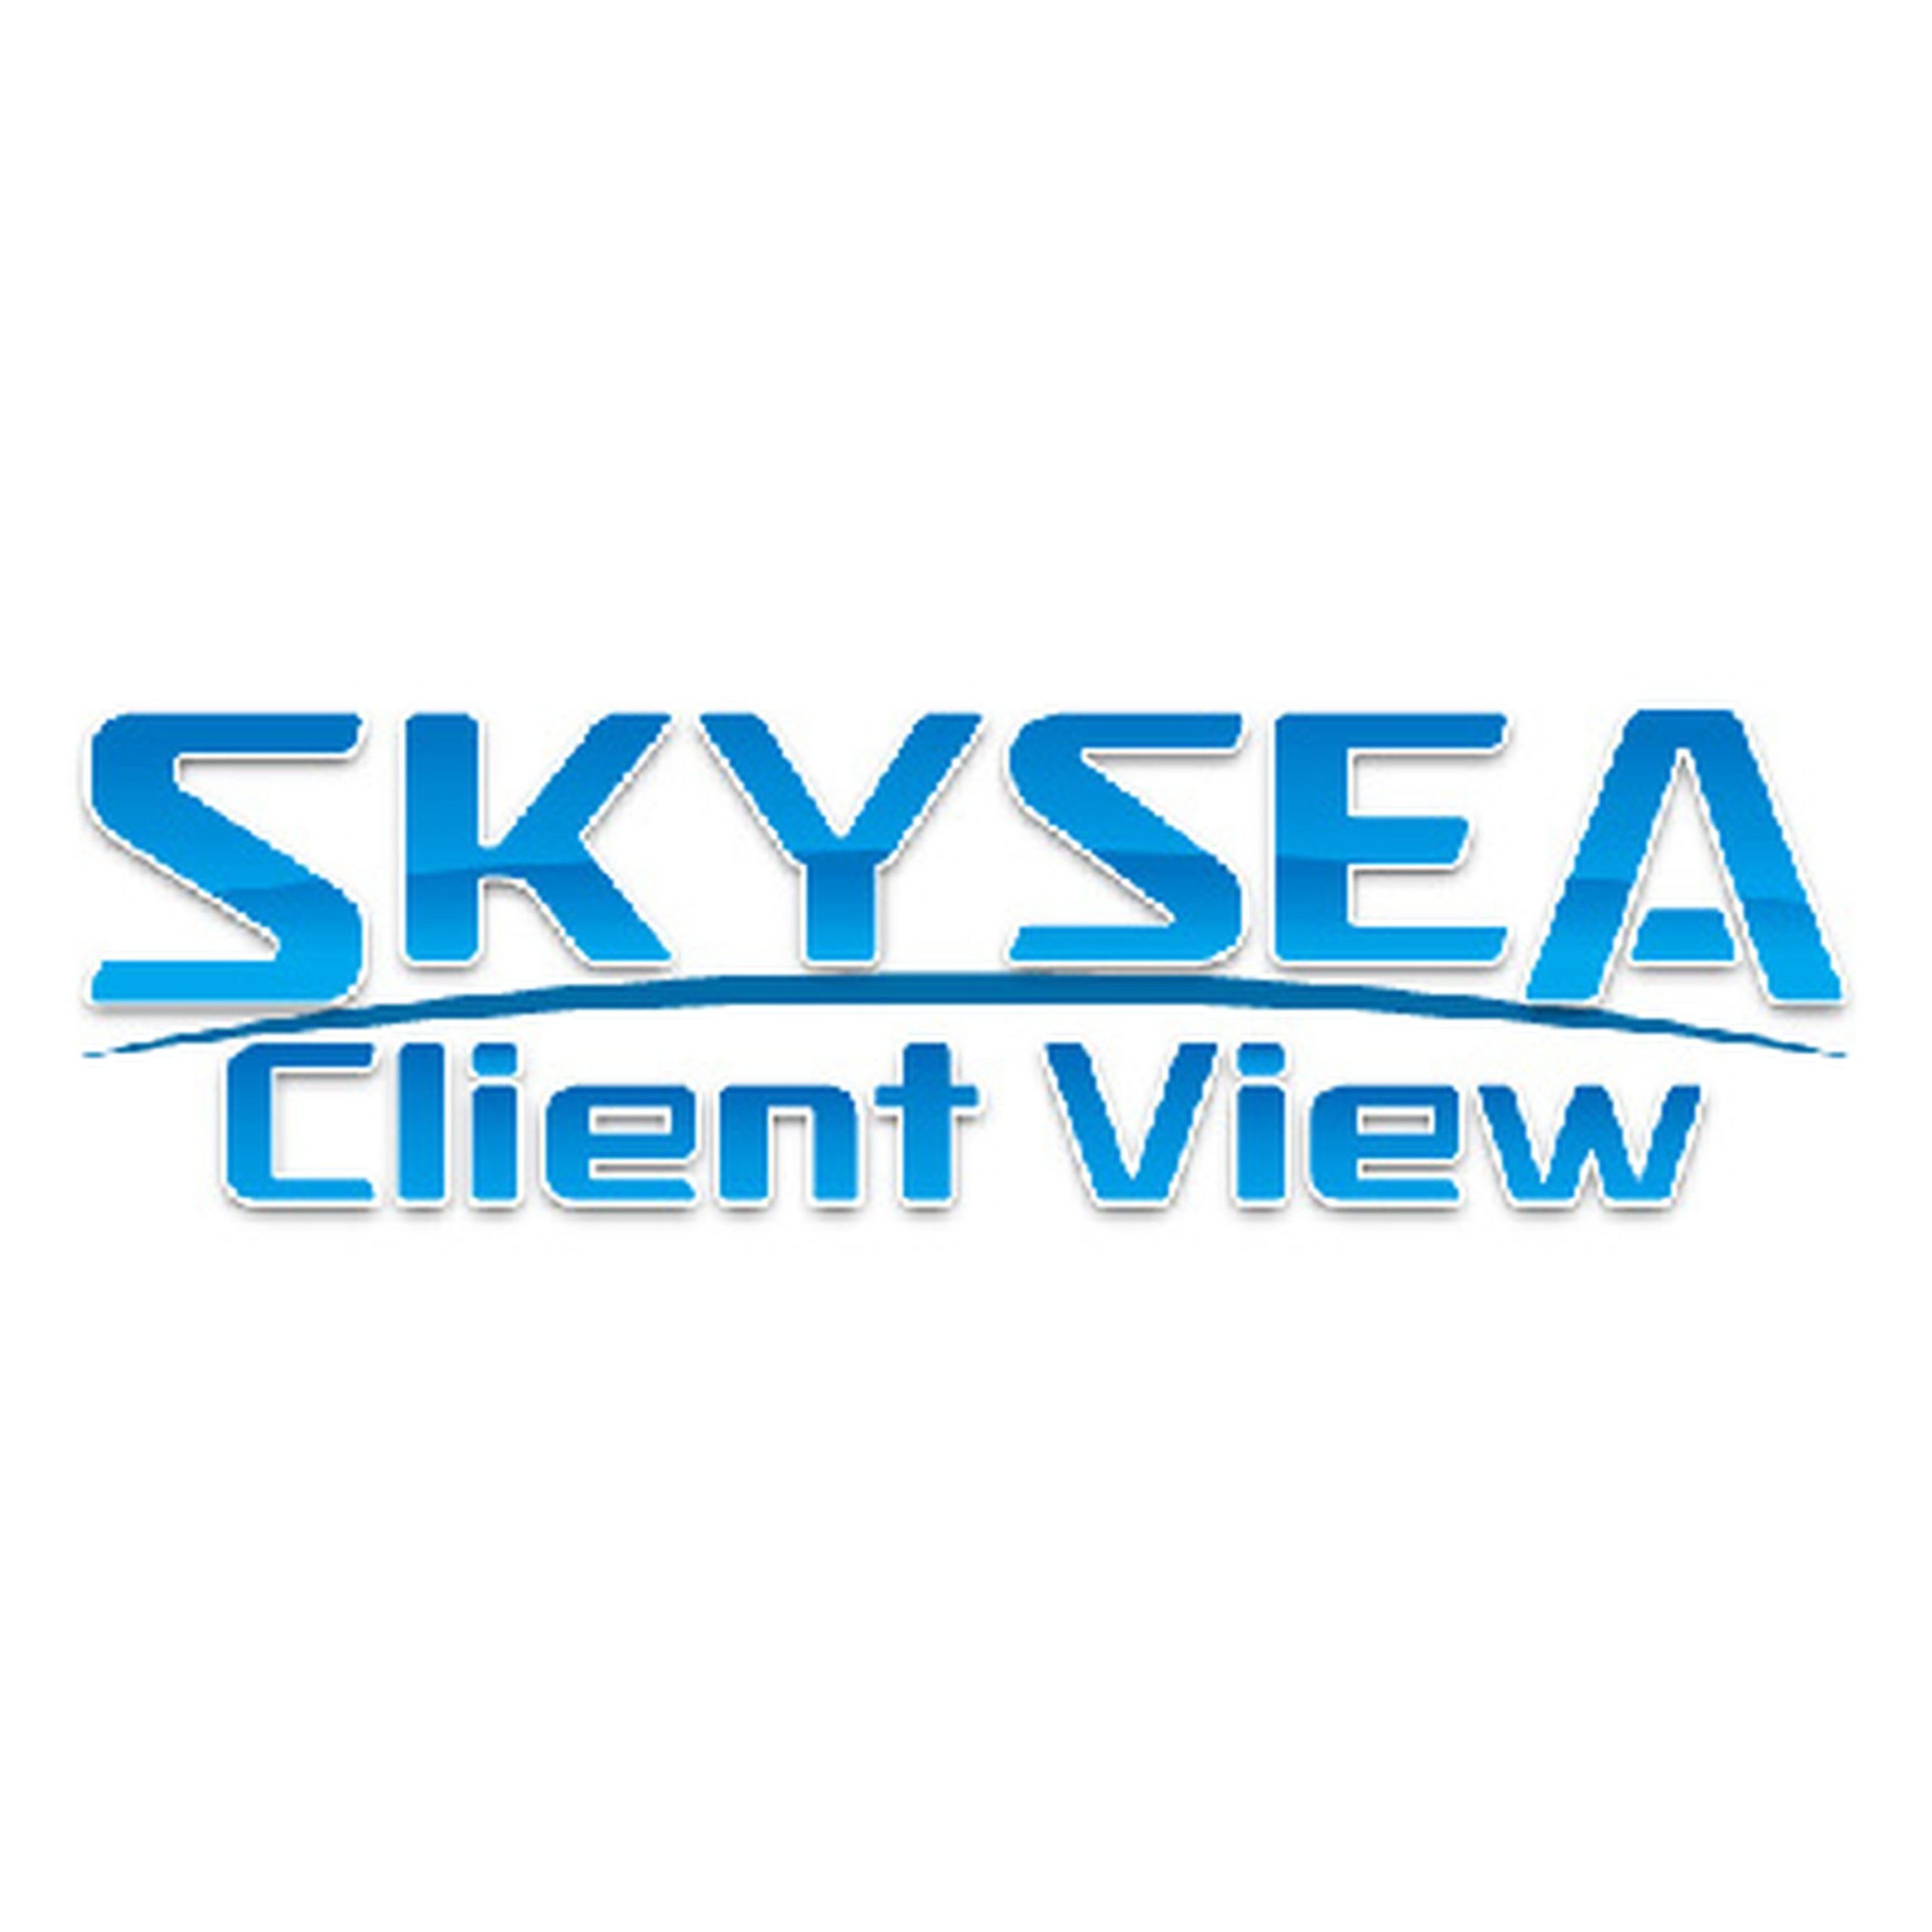 クライアント運用管理ソフトウエア SKYSEA Client View